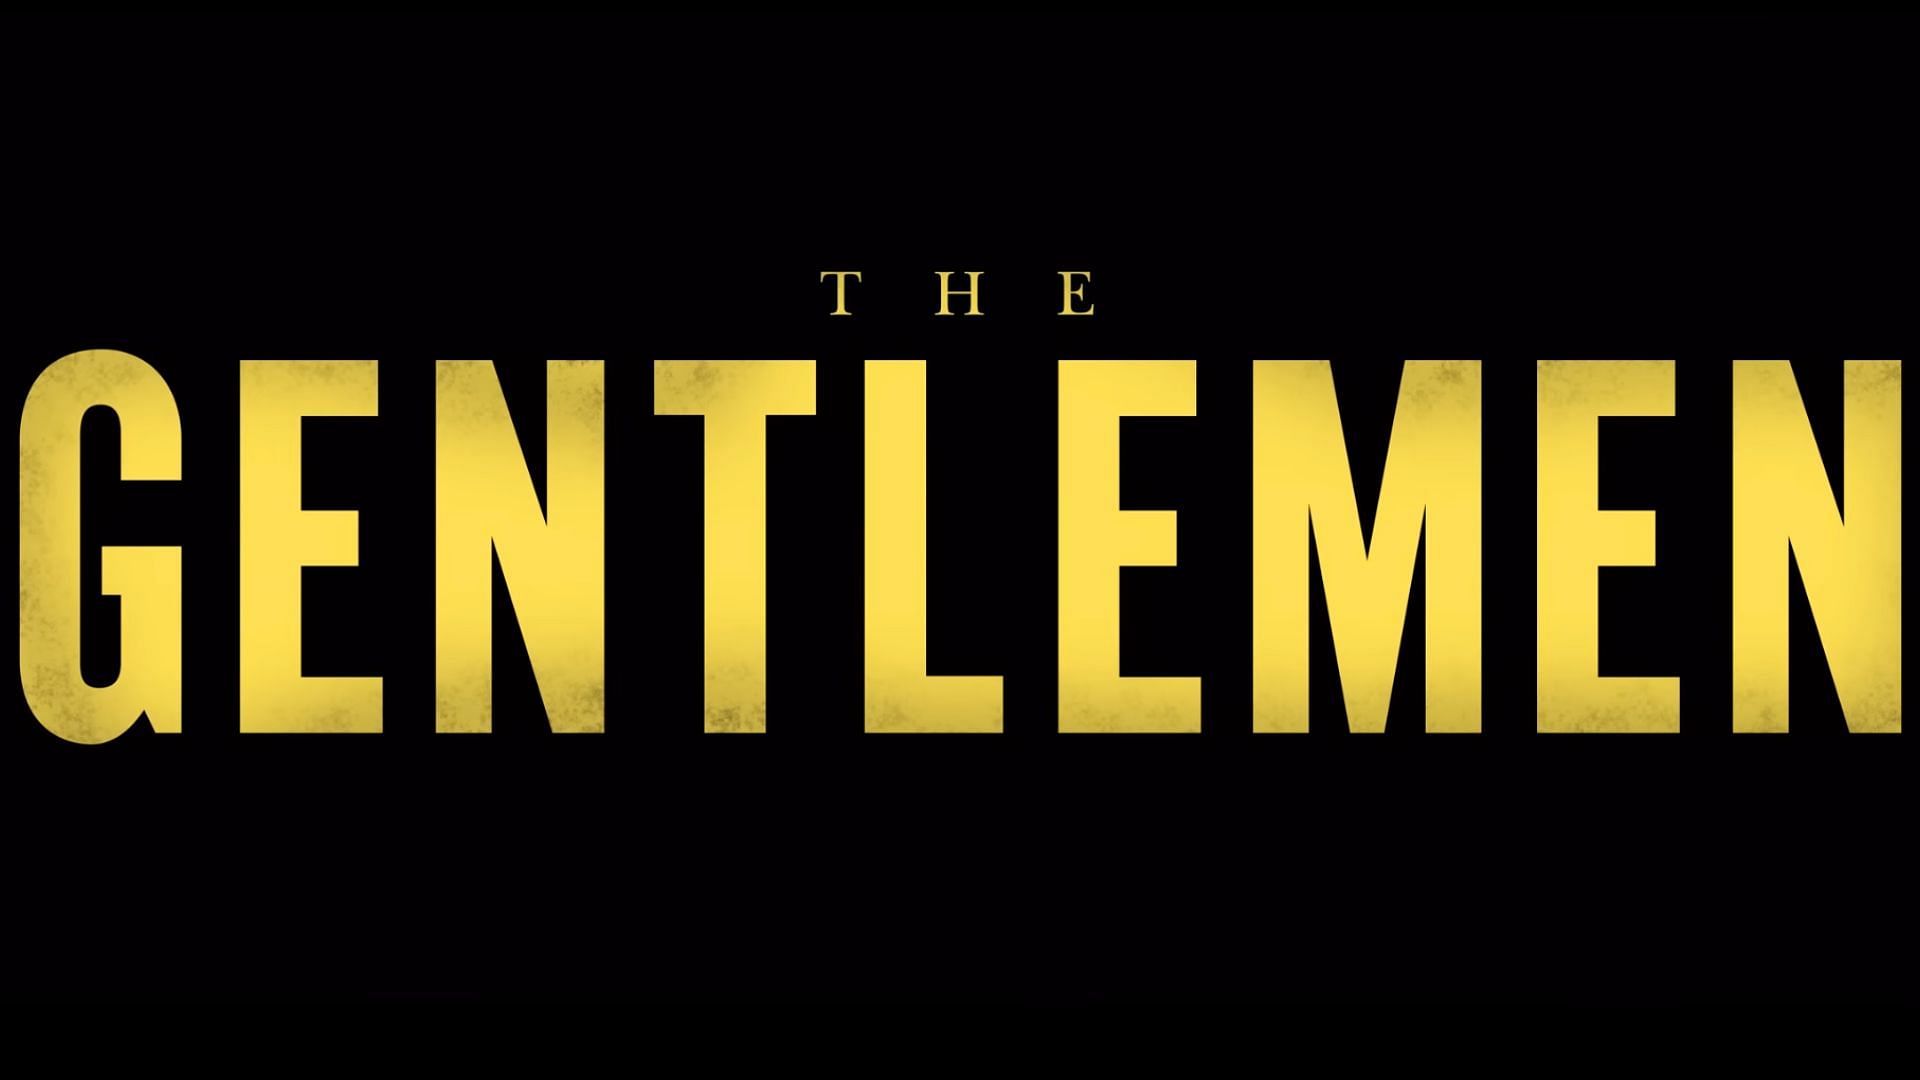 The Gentlemen saw its trailer drop recently. (Image via Netflix)